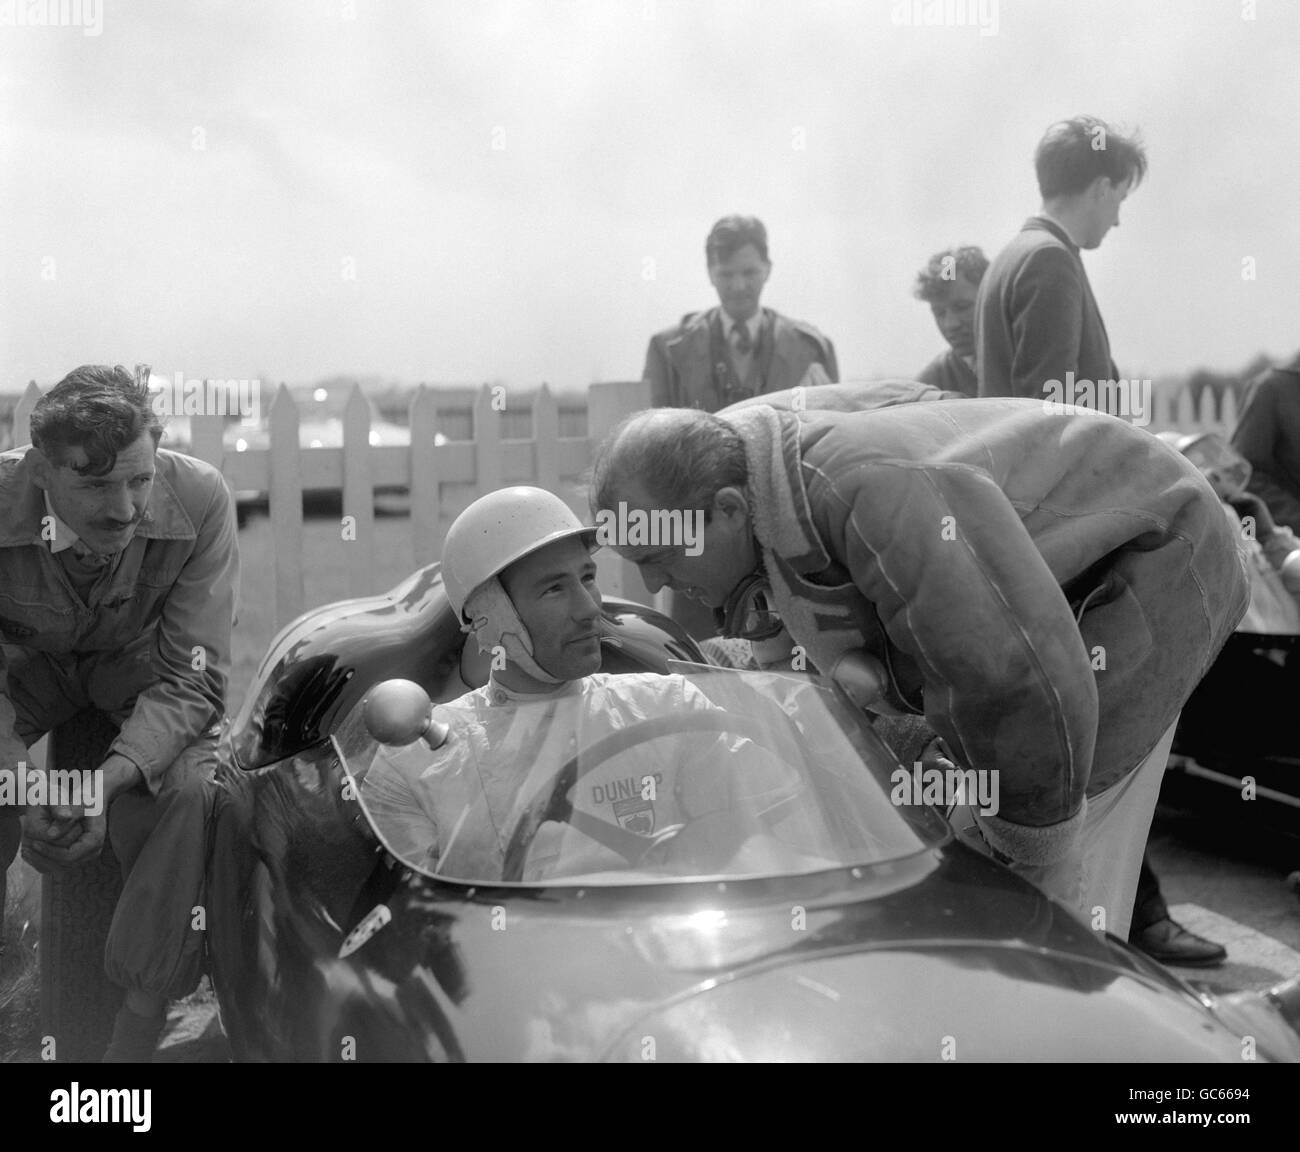 Stirling Moss, pilote de course britannique, assis dans une Porsche de l'équipe de course RRC Walker, parlant au pilote de course Harry Schell, avant de léter le circuit de Goodwood en préparation à l'événement automobile britannique du lundi de Pâques. Banque D'Images